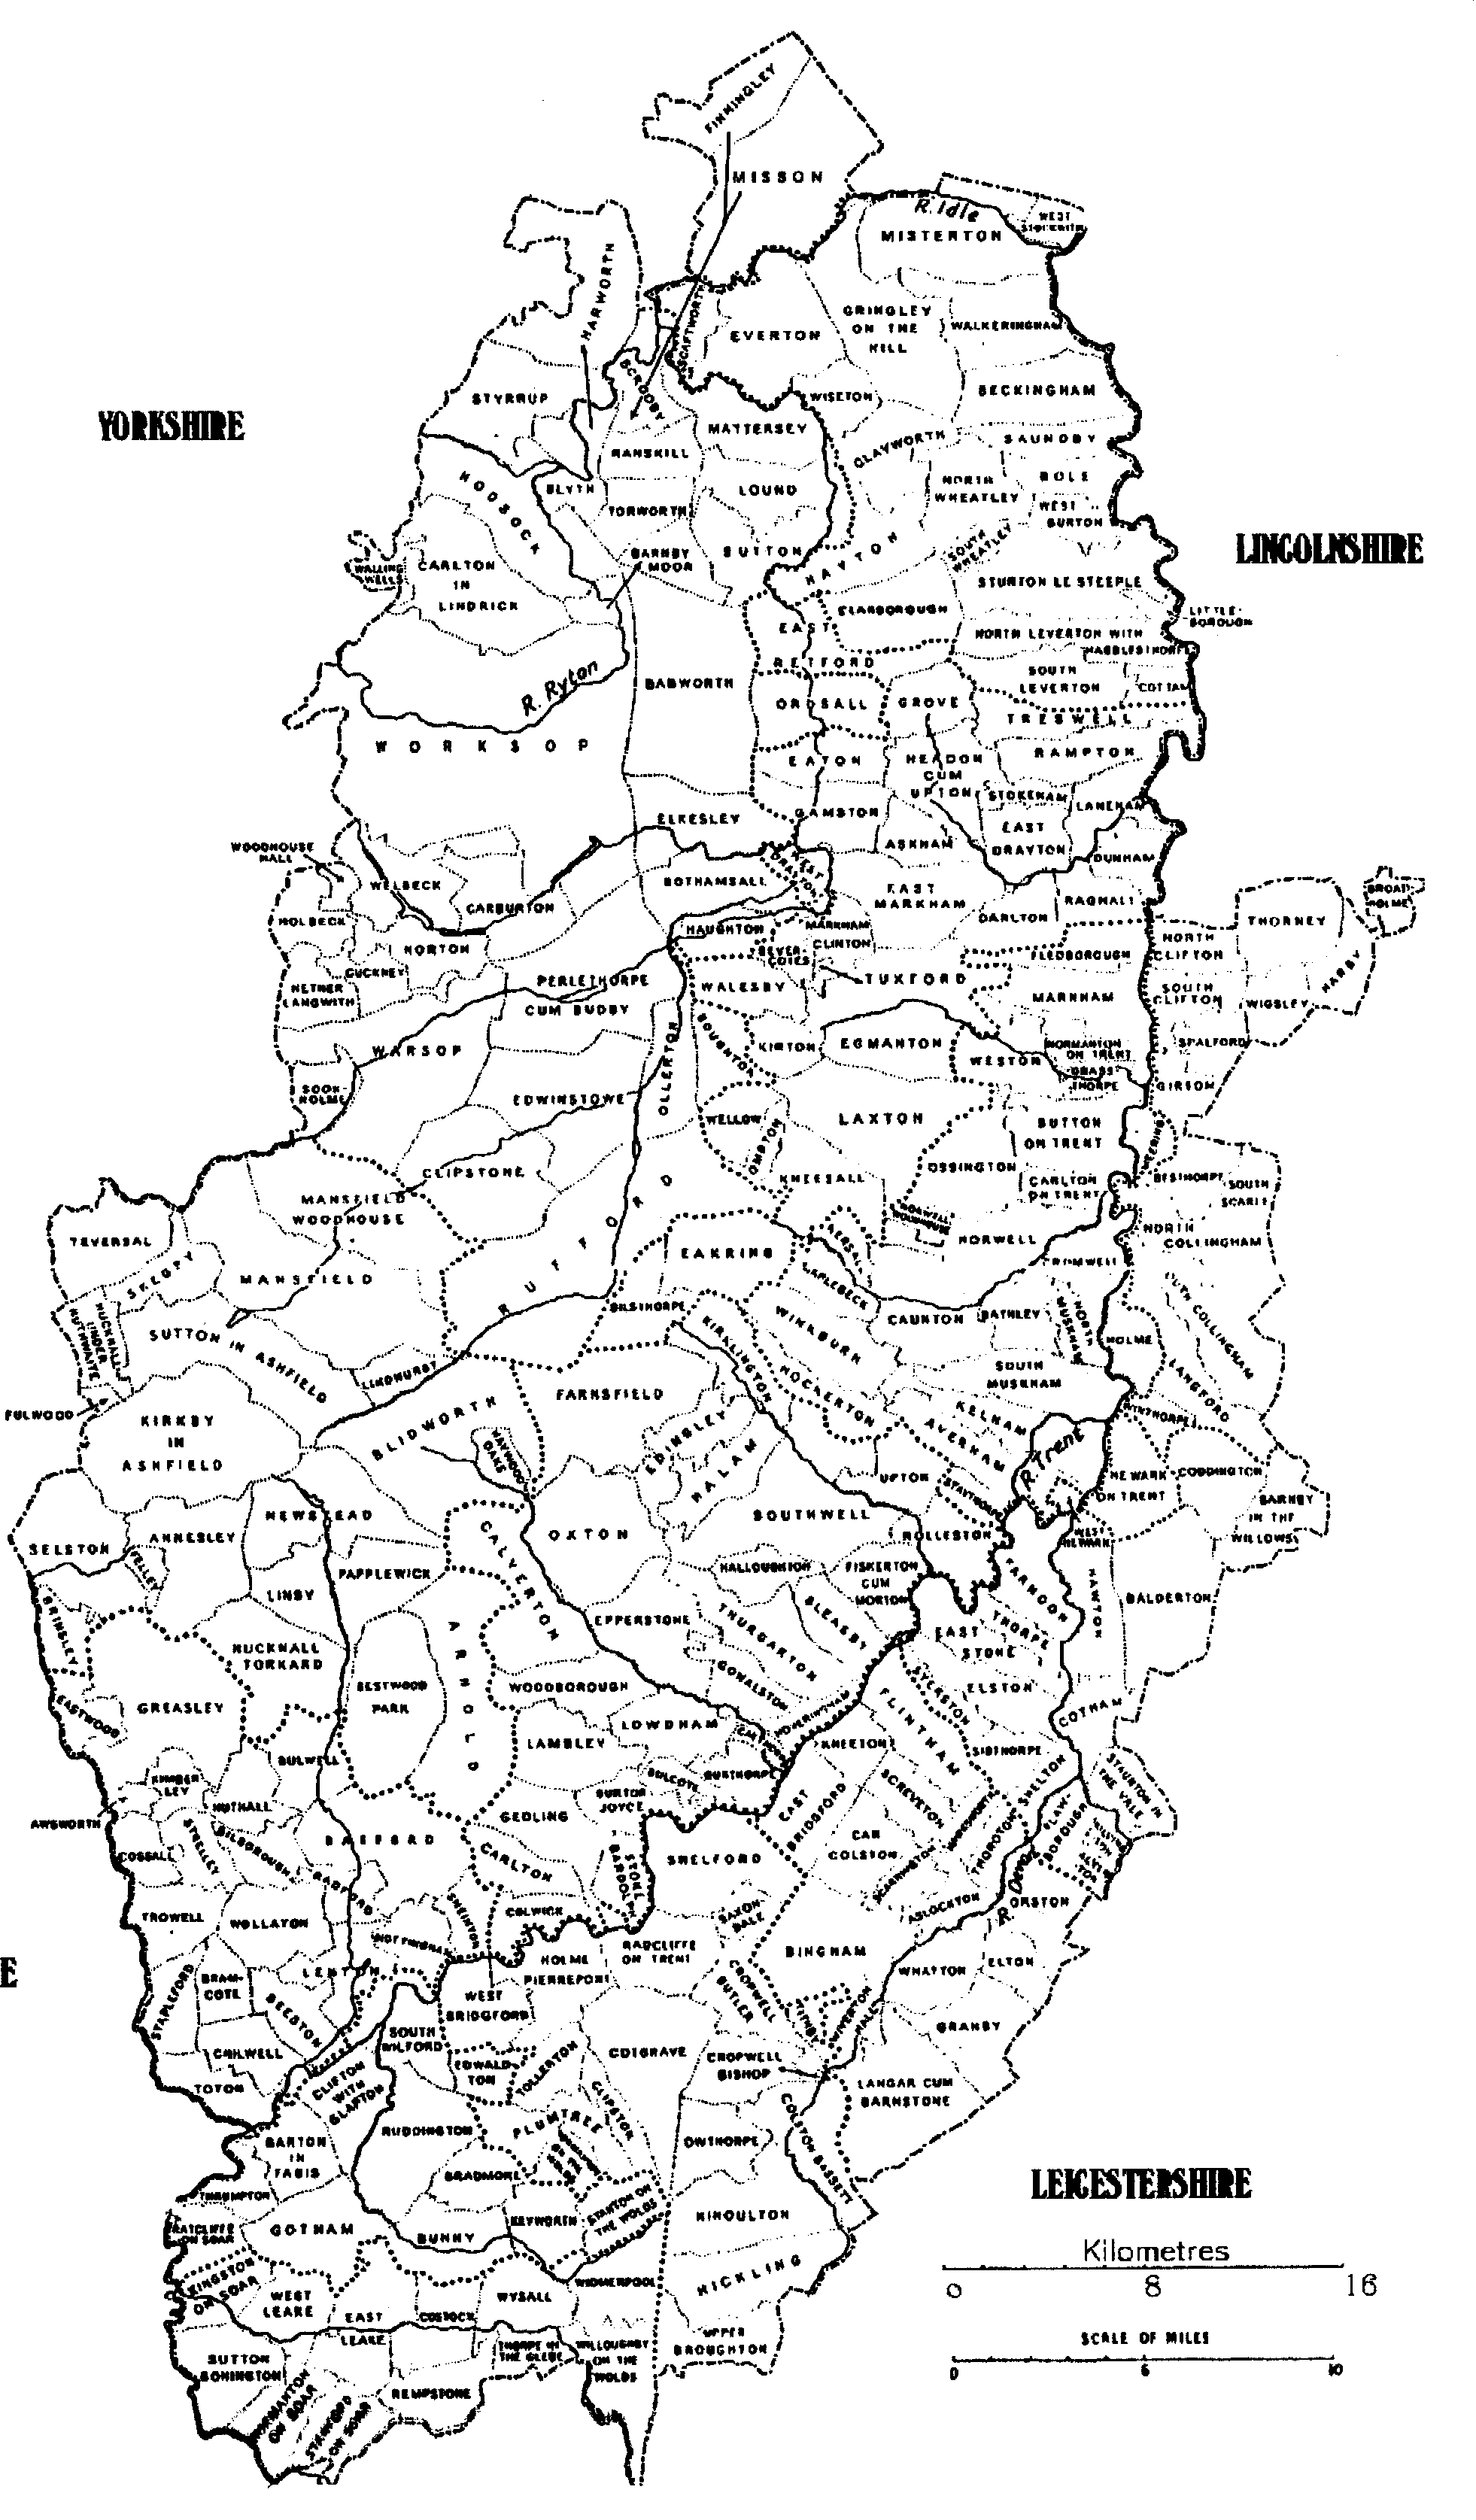 GENUKI: Parish Map of Nottinghamshire, Nottinghamshire